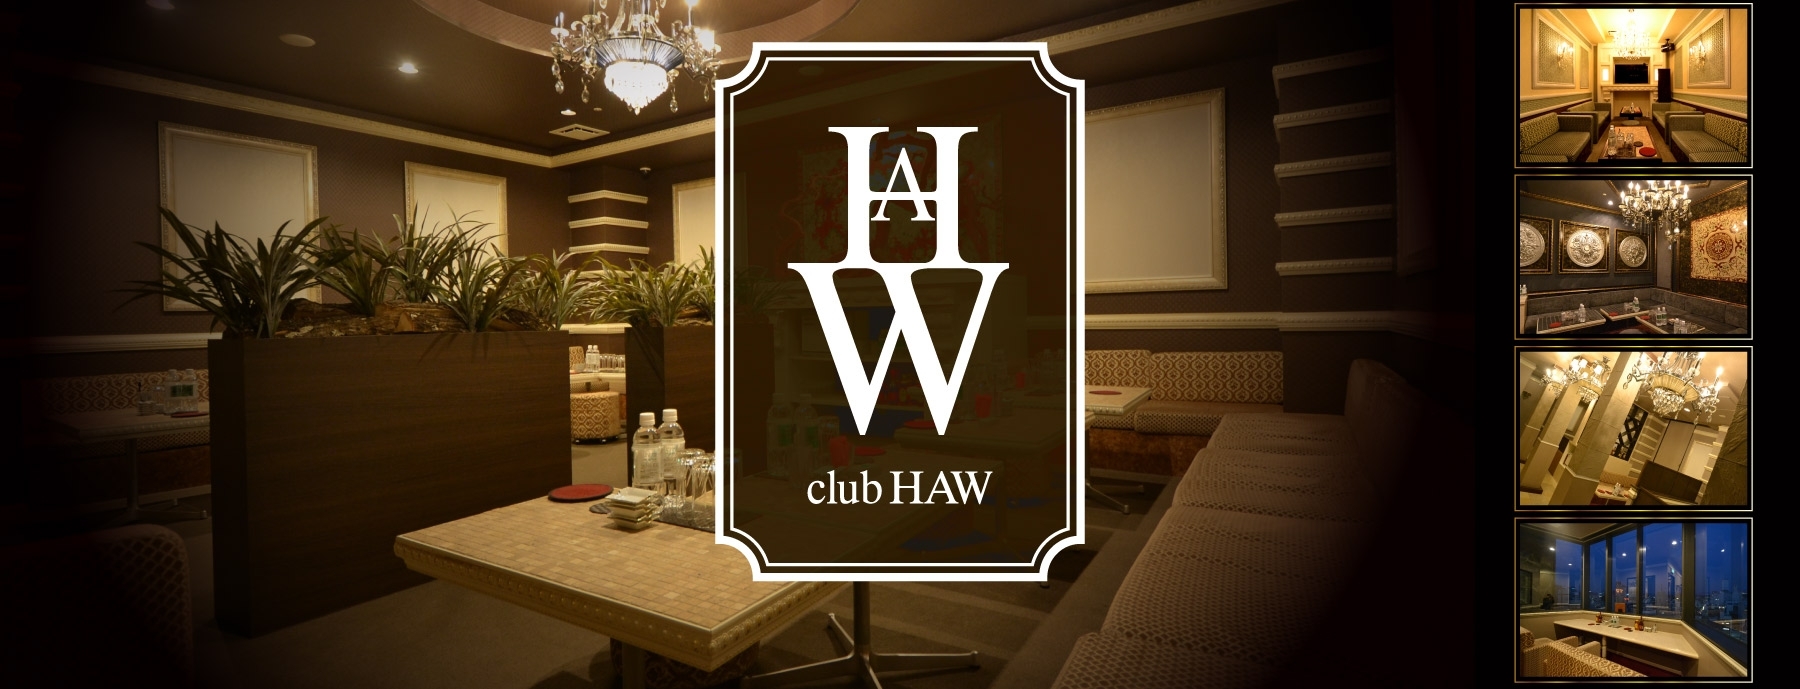 LEE򌤖x LoN club HAW 〜nE〜̓X܉摜1